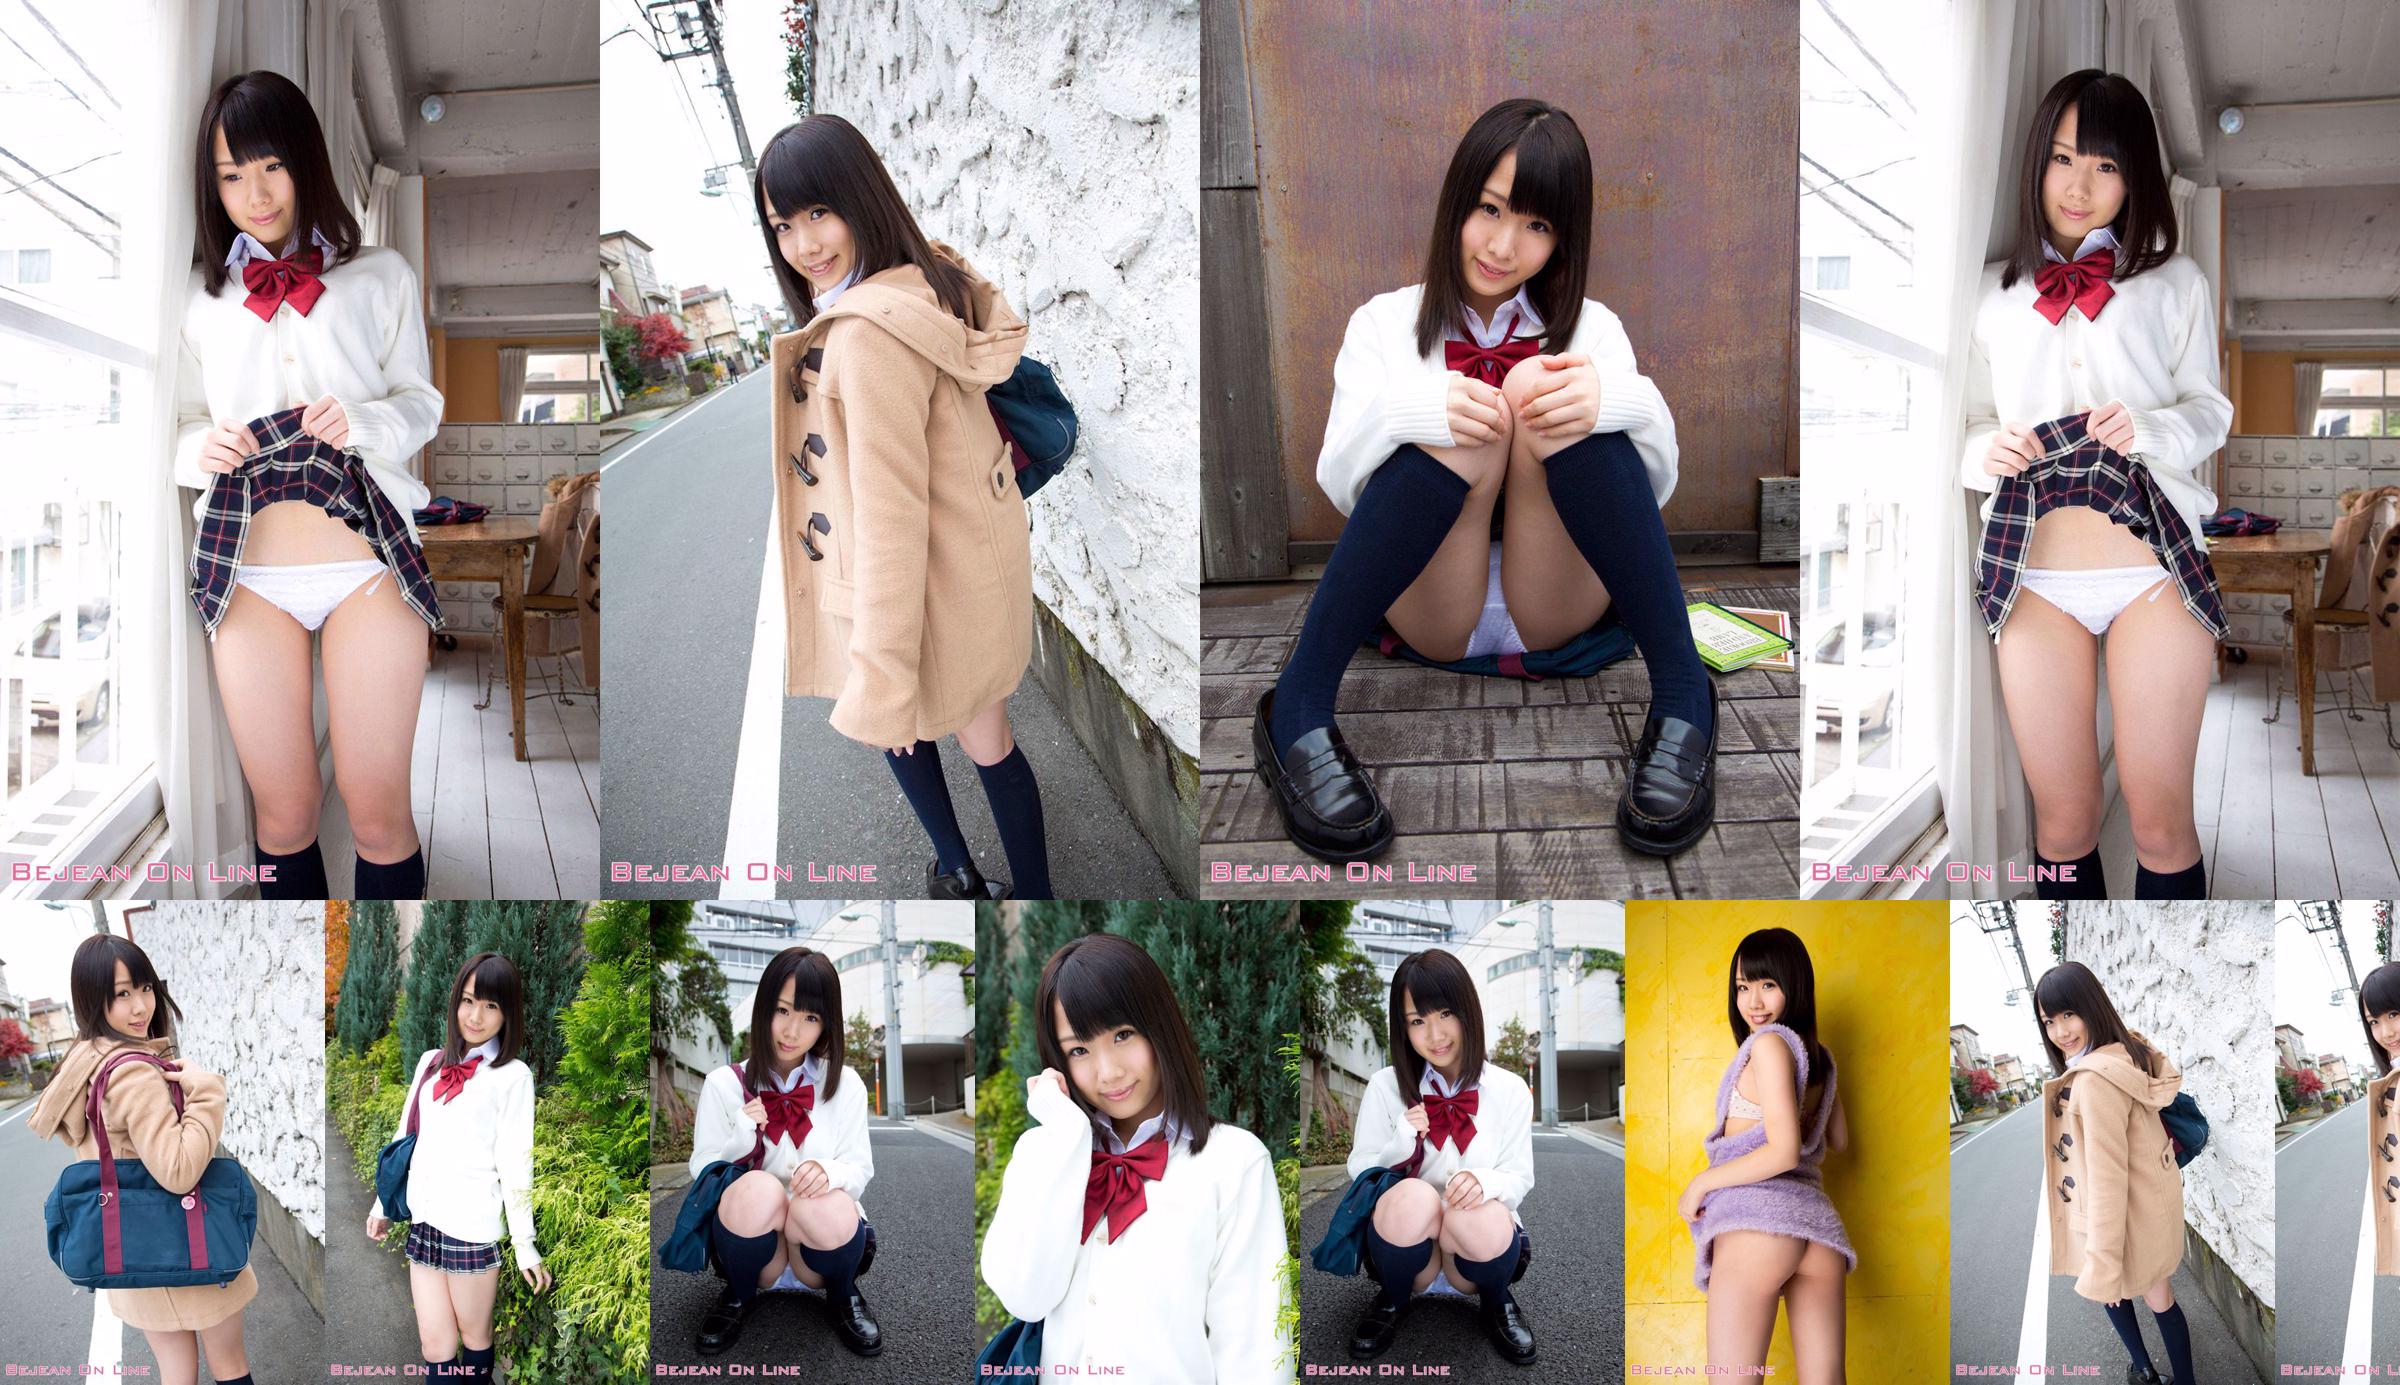 第一照片美女Ami Hyakutake Ami Hyakutake / Ami Hyakutake [Bejean On Line] No.d0ed63 第3頁